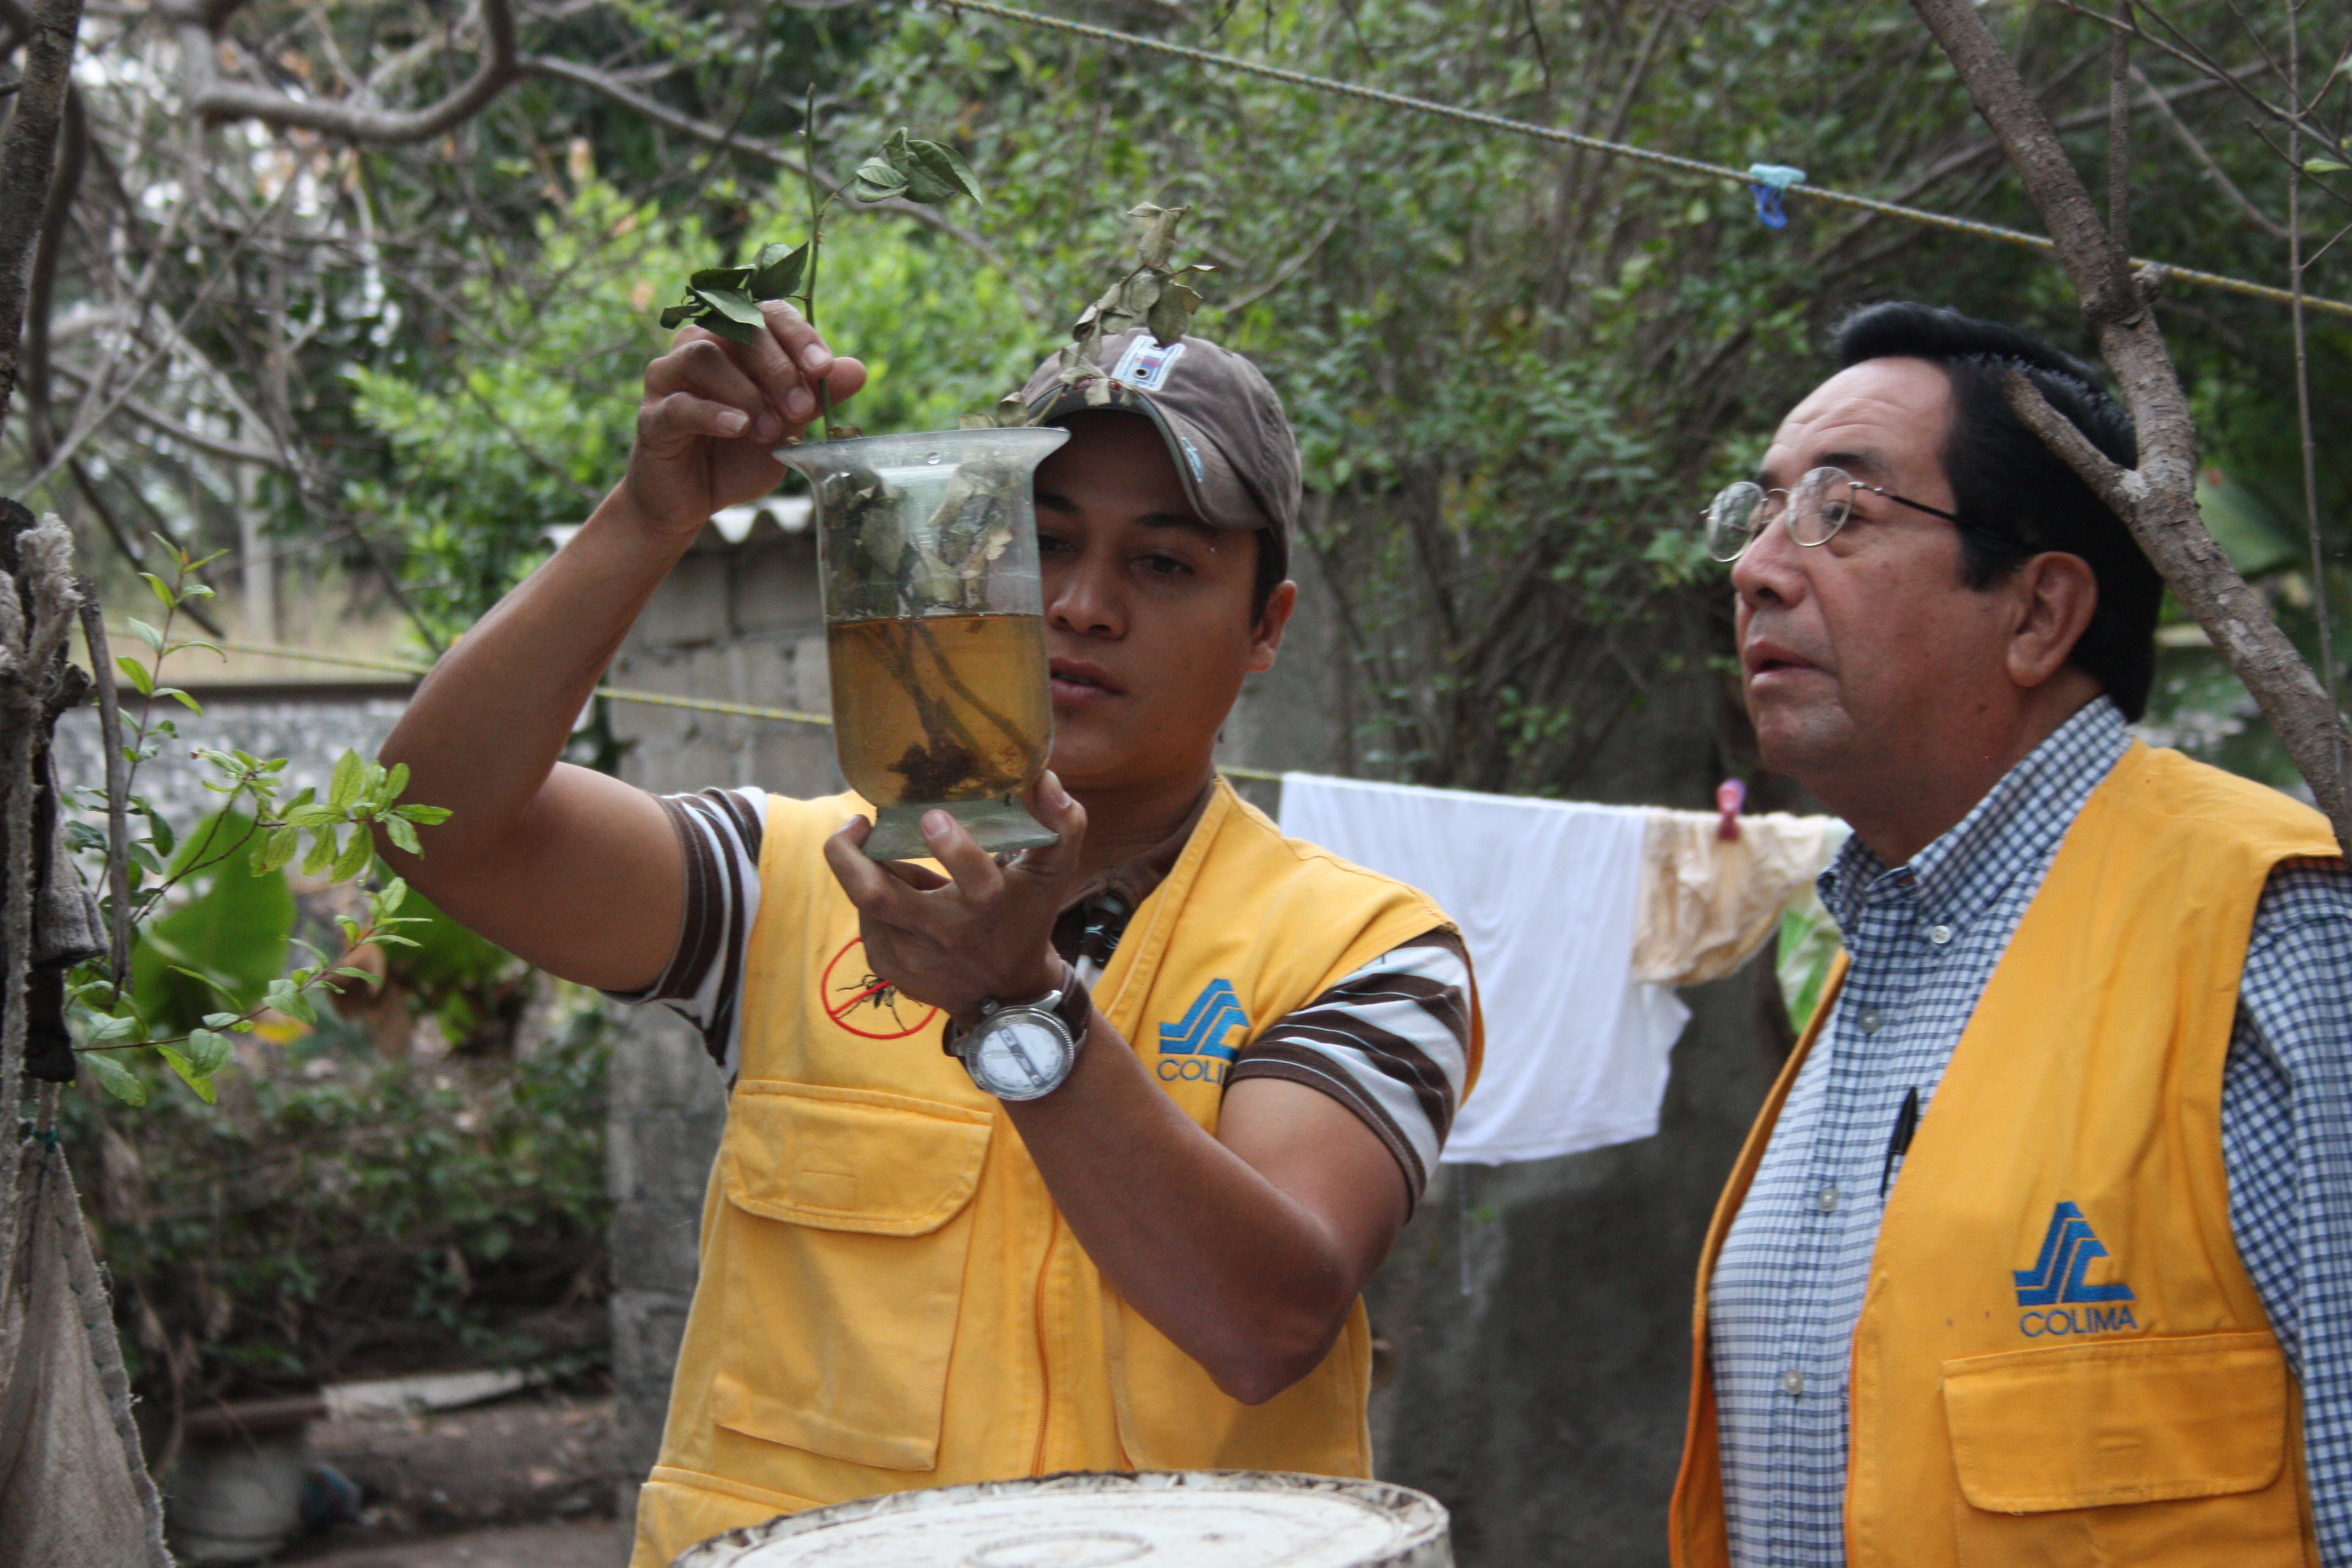 Hombres revisando el frasco con posibles larvas de mosquitos.